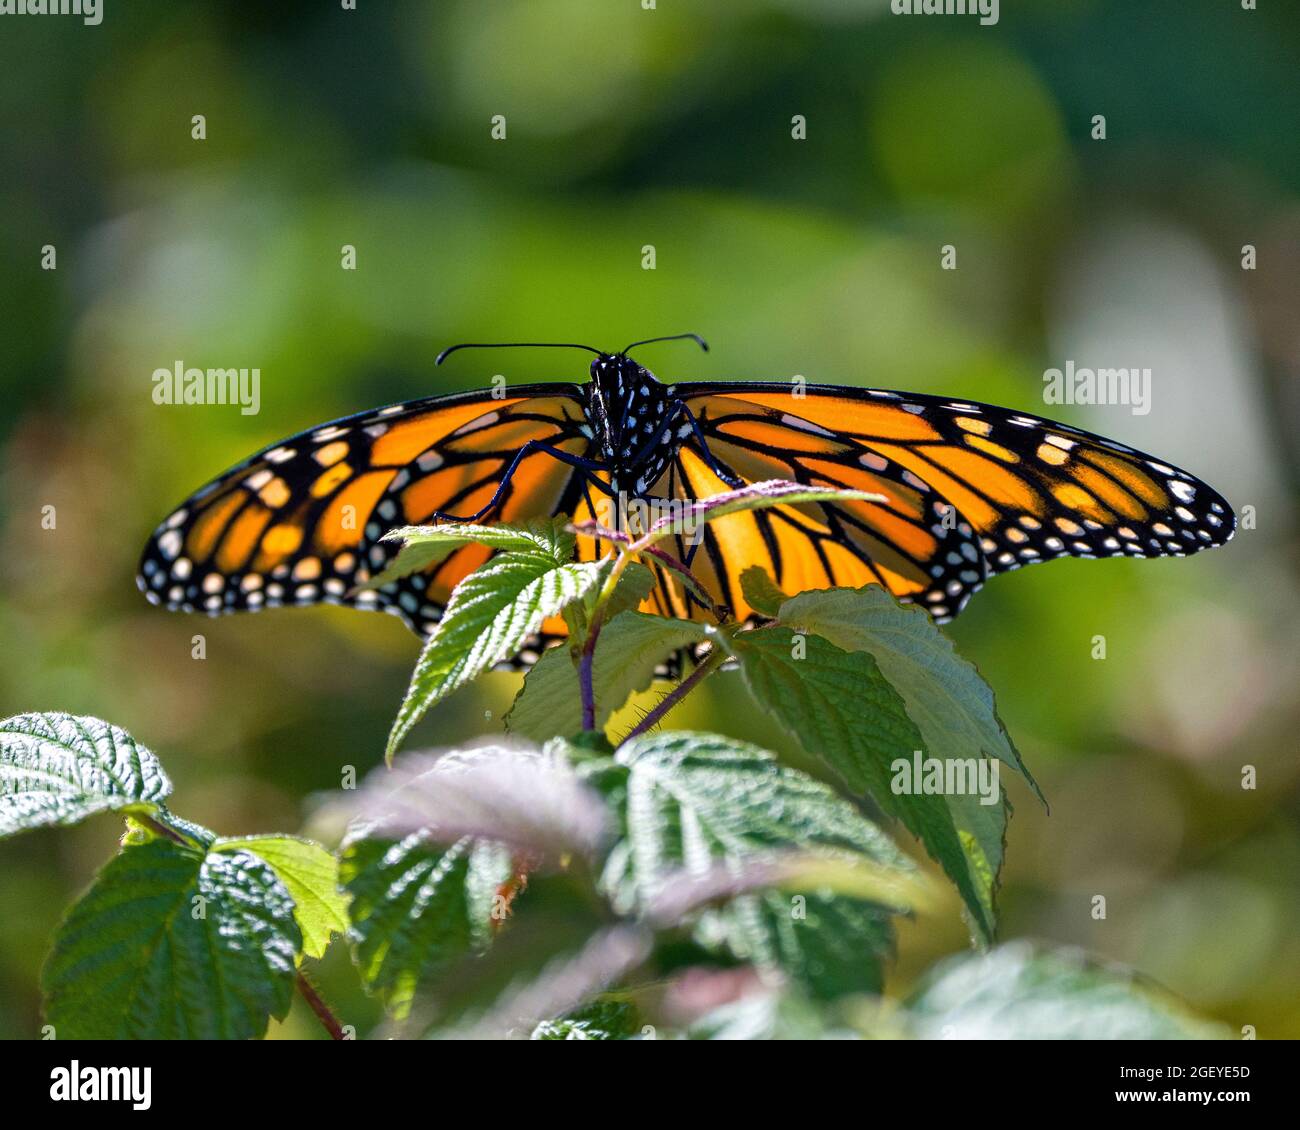 Mariposa Monarca bebiendo o bebiendo néctar de una planta con un fondo verde borroso en su entorno y hábitat circundante. Foto de stock